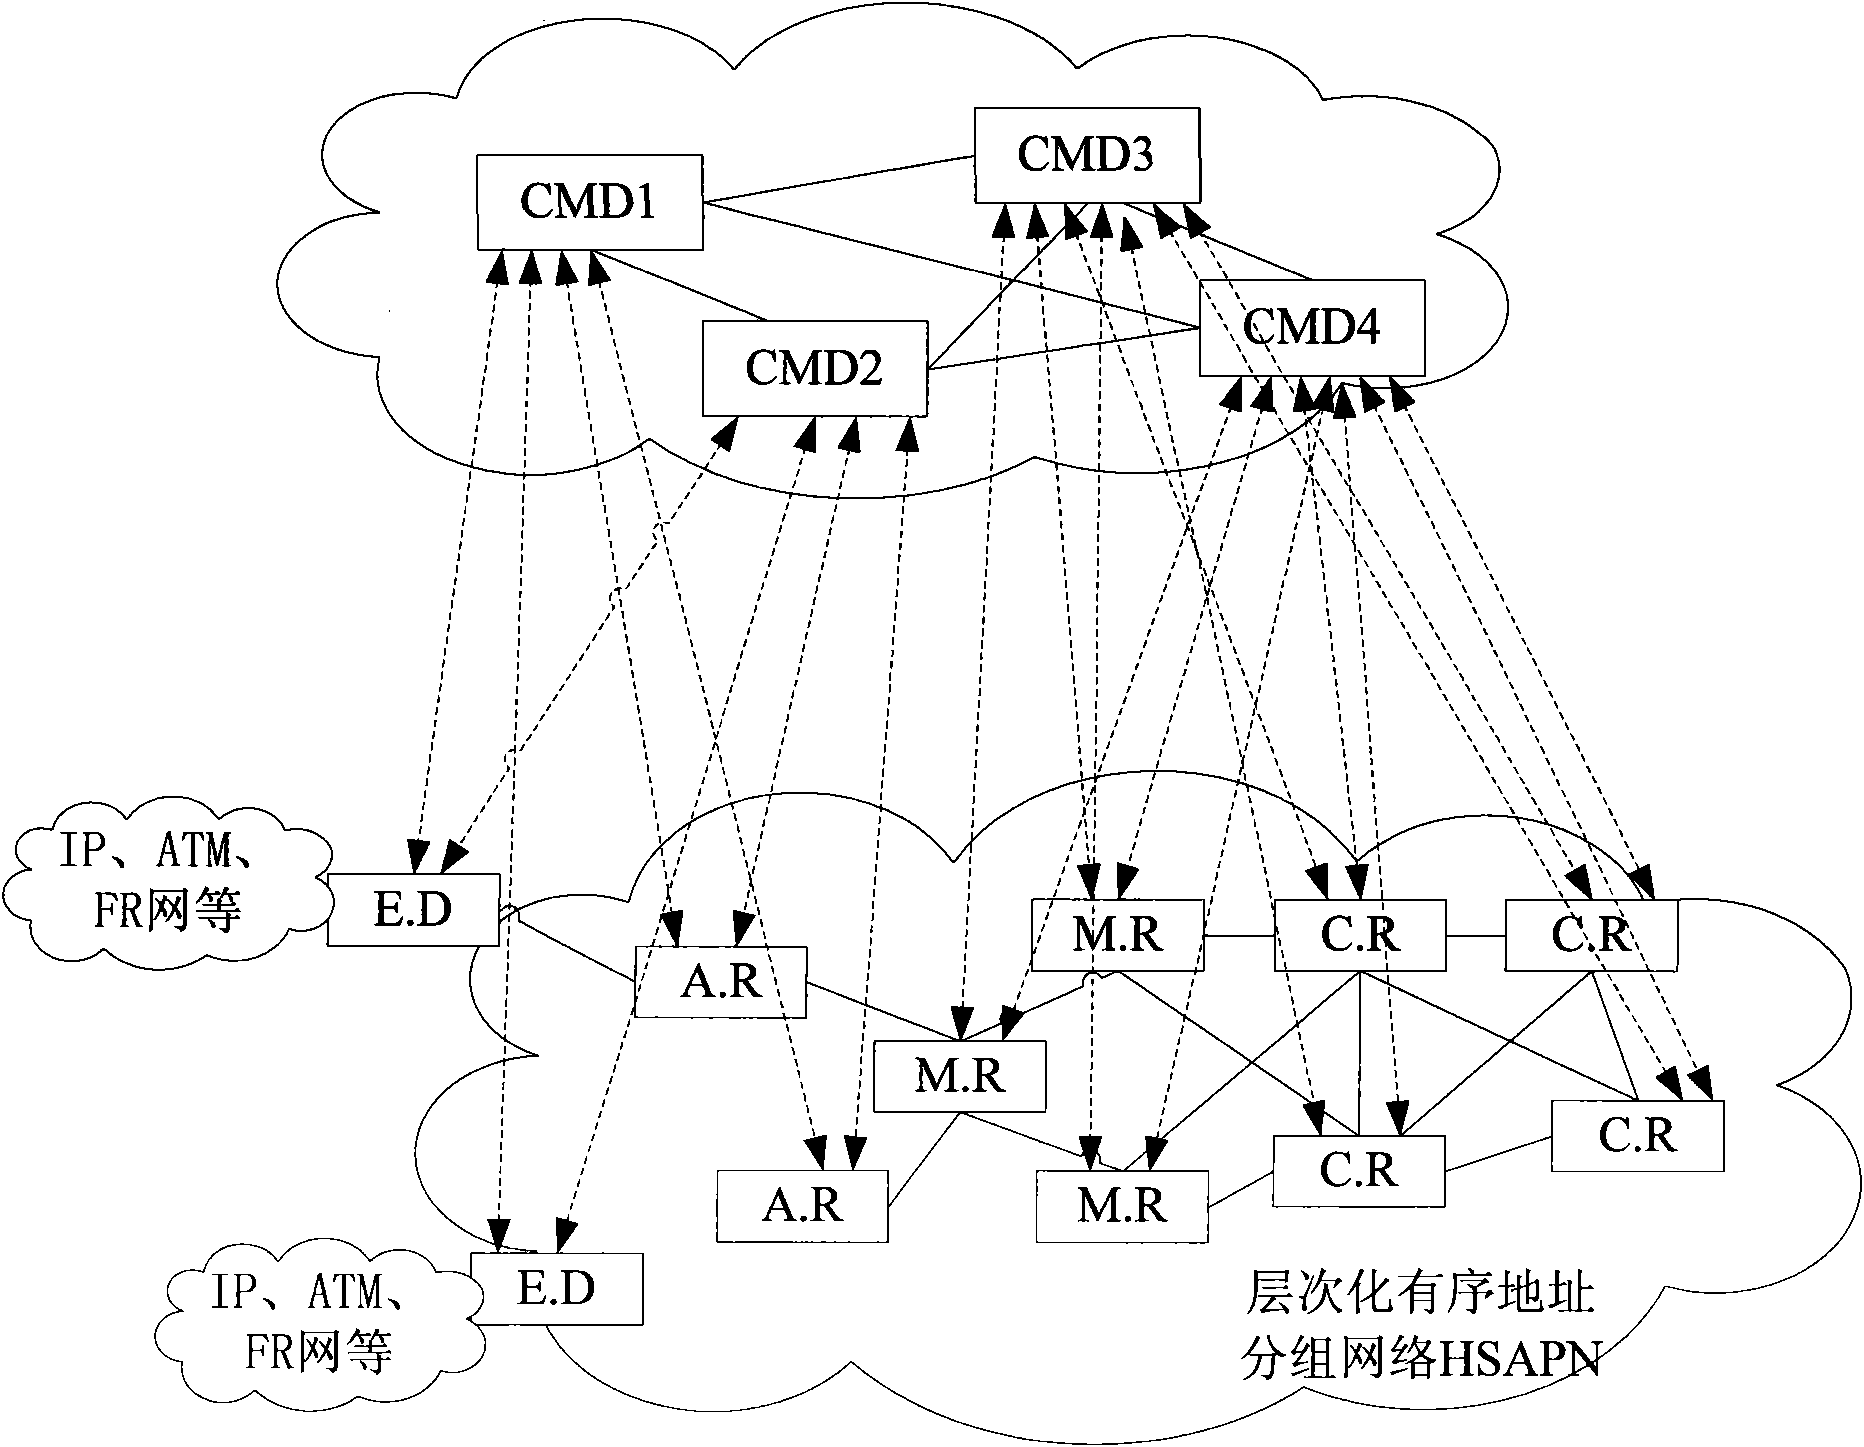 Domain split network and method for obtaining network topology map of domain split network